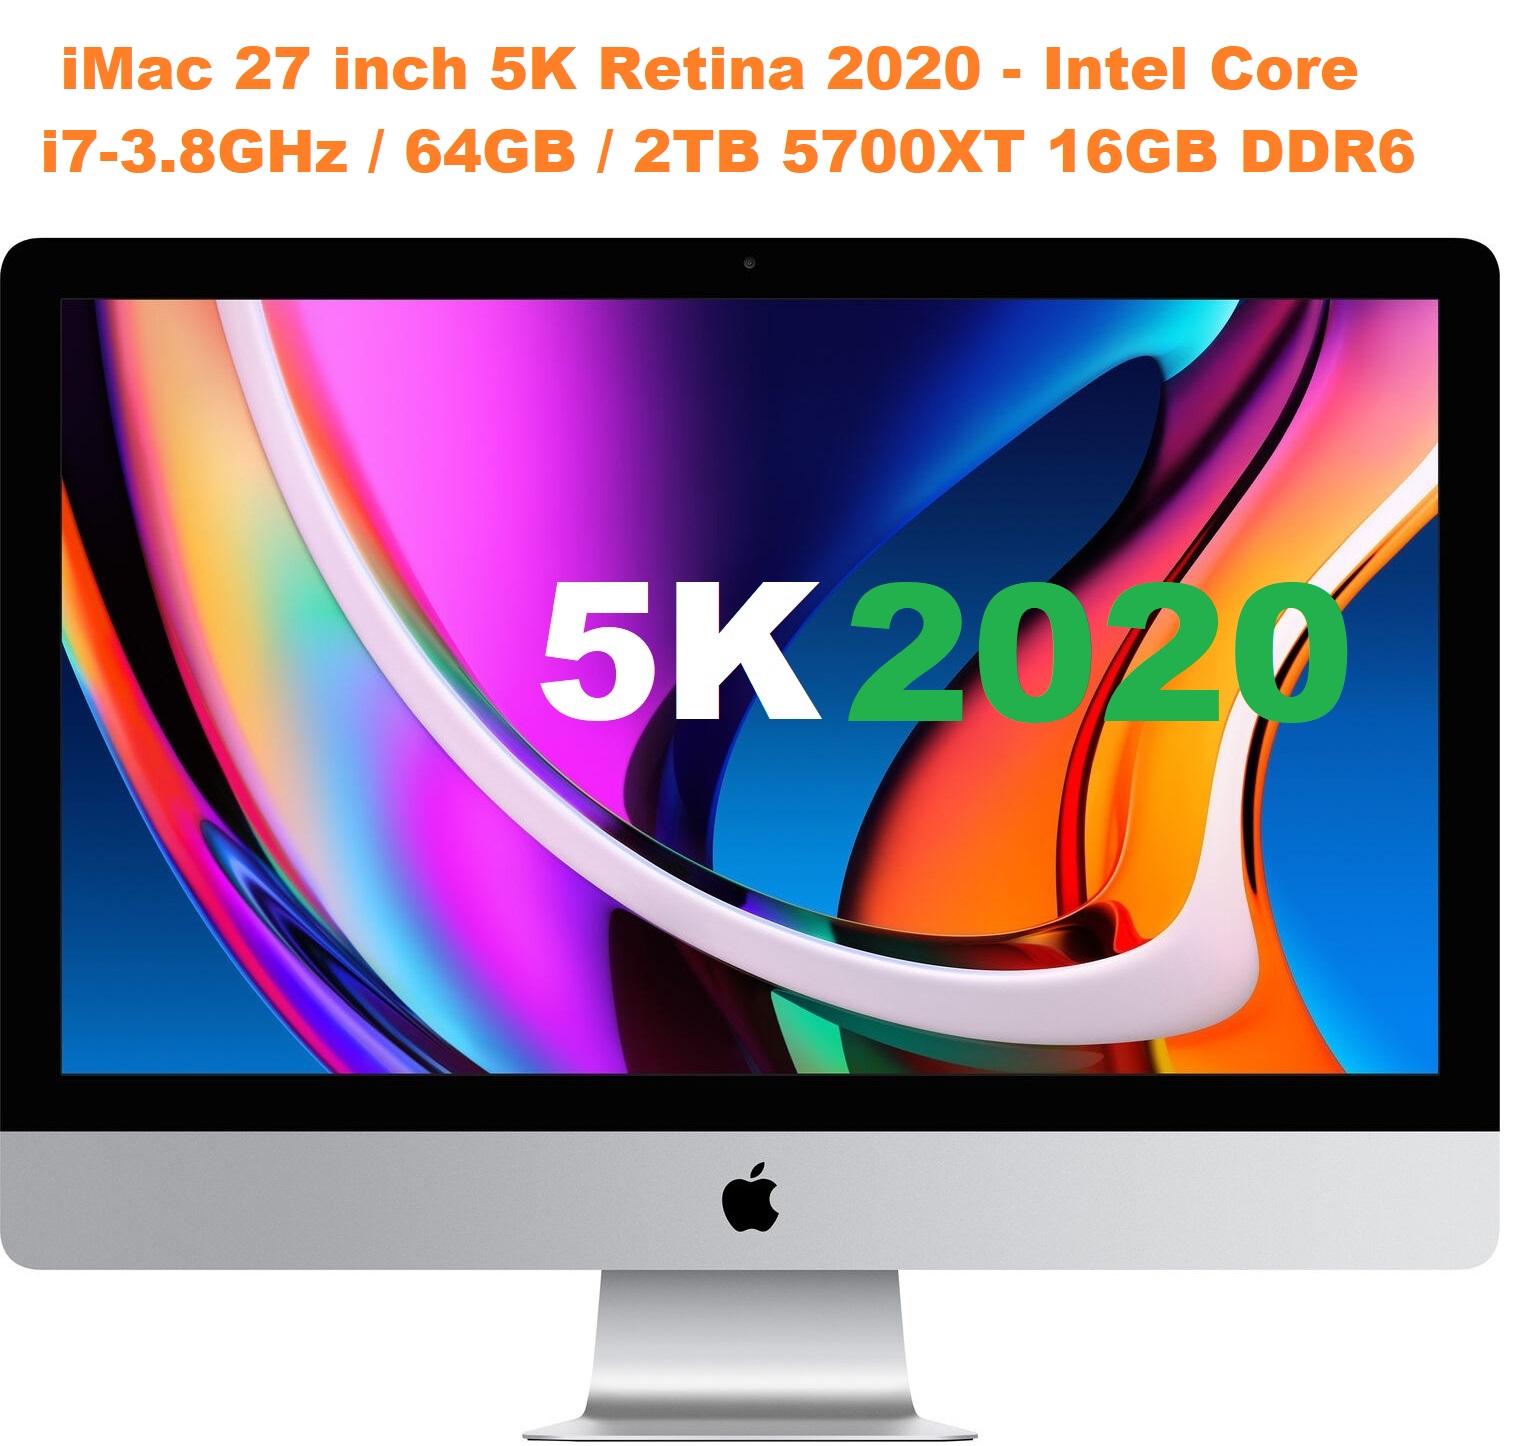 iMac 27 inch 5K Retina 2020 - Intel Core i7-3.8GHz  64GB  2TB 5700XT 16GB DDR6